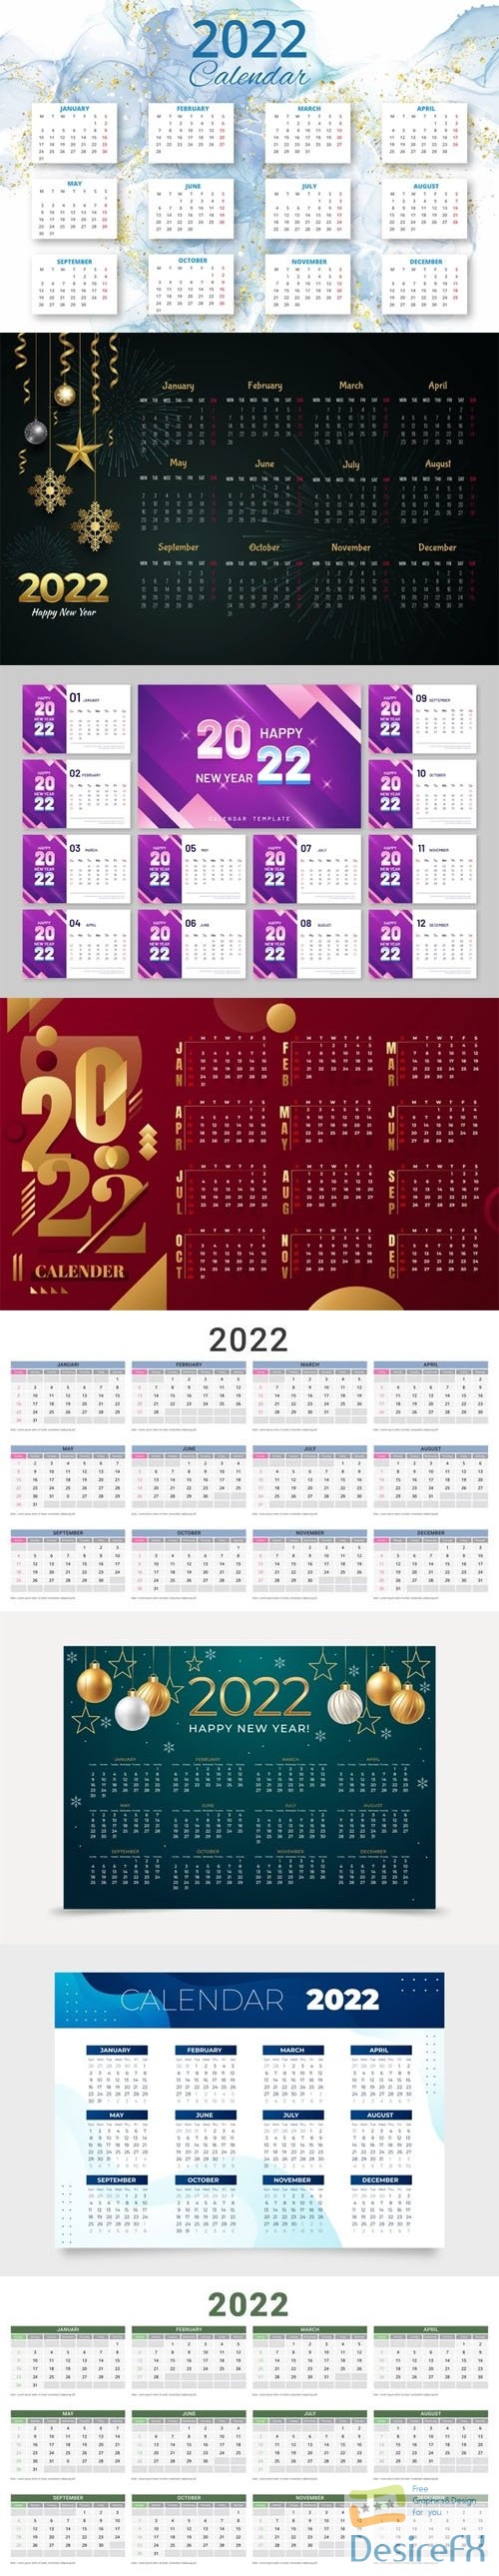 8 Realistic 2022 Calendars Vector Templates